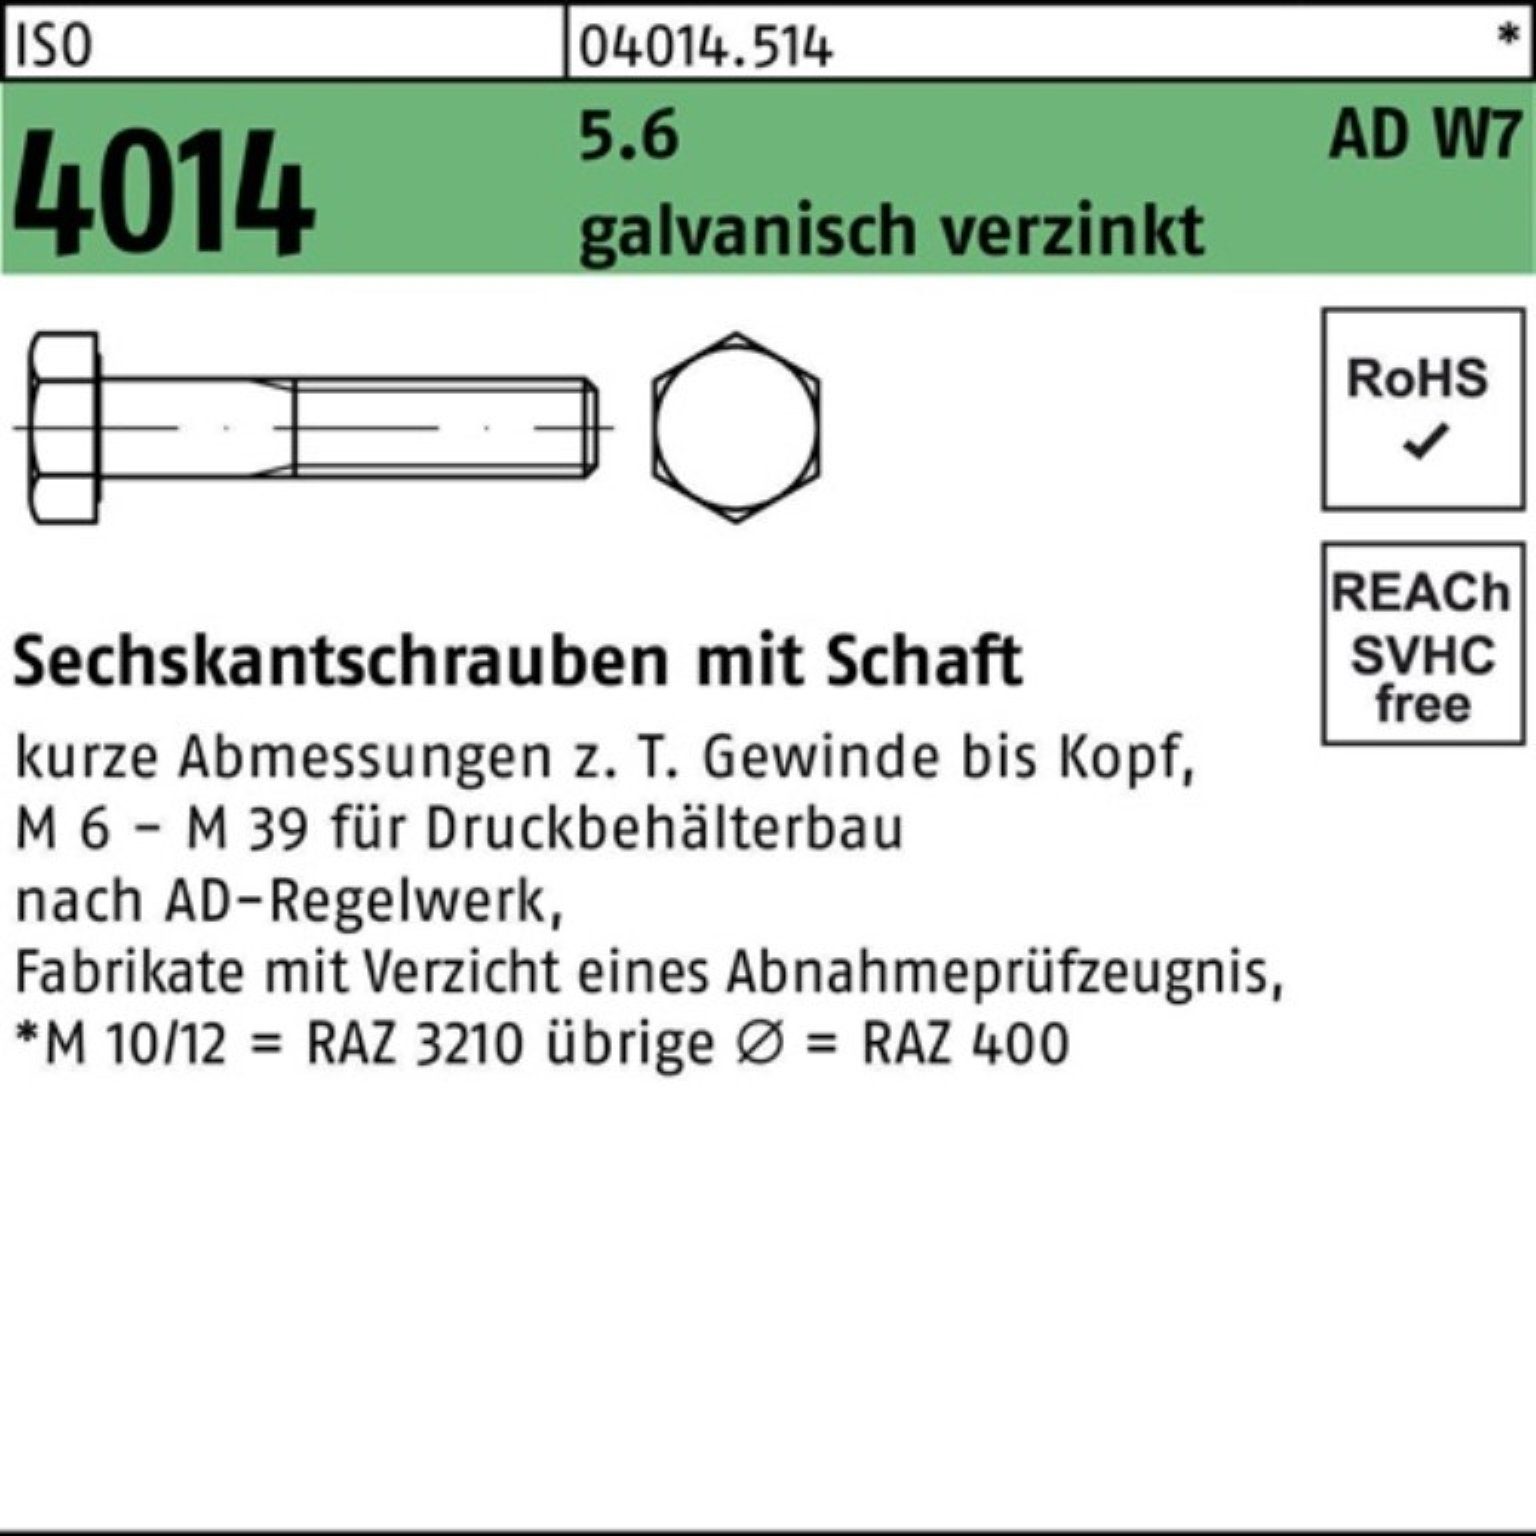 Bufab Sechskantschraube 100er W7 5.6 100 galv.verz Sechskantschraube ISO Schaft M10x Pack 4014